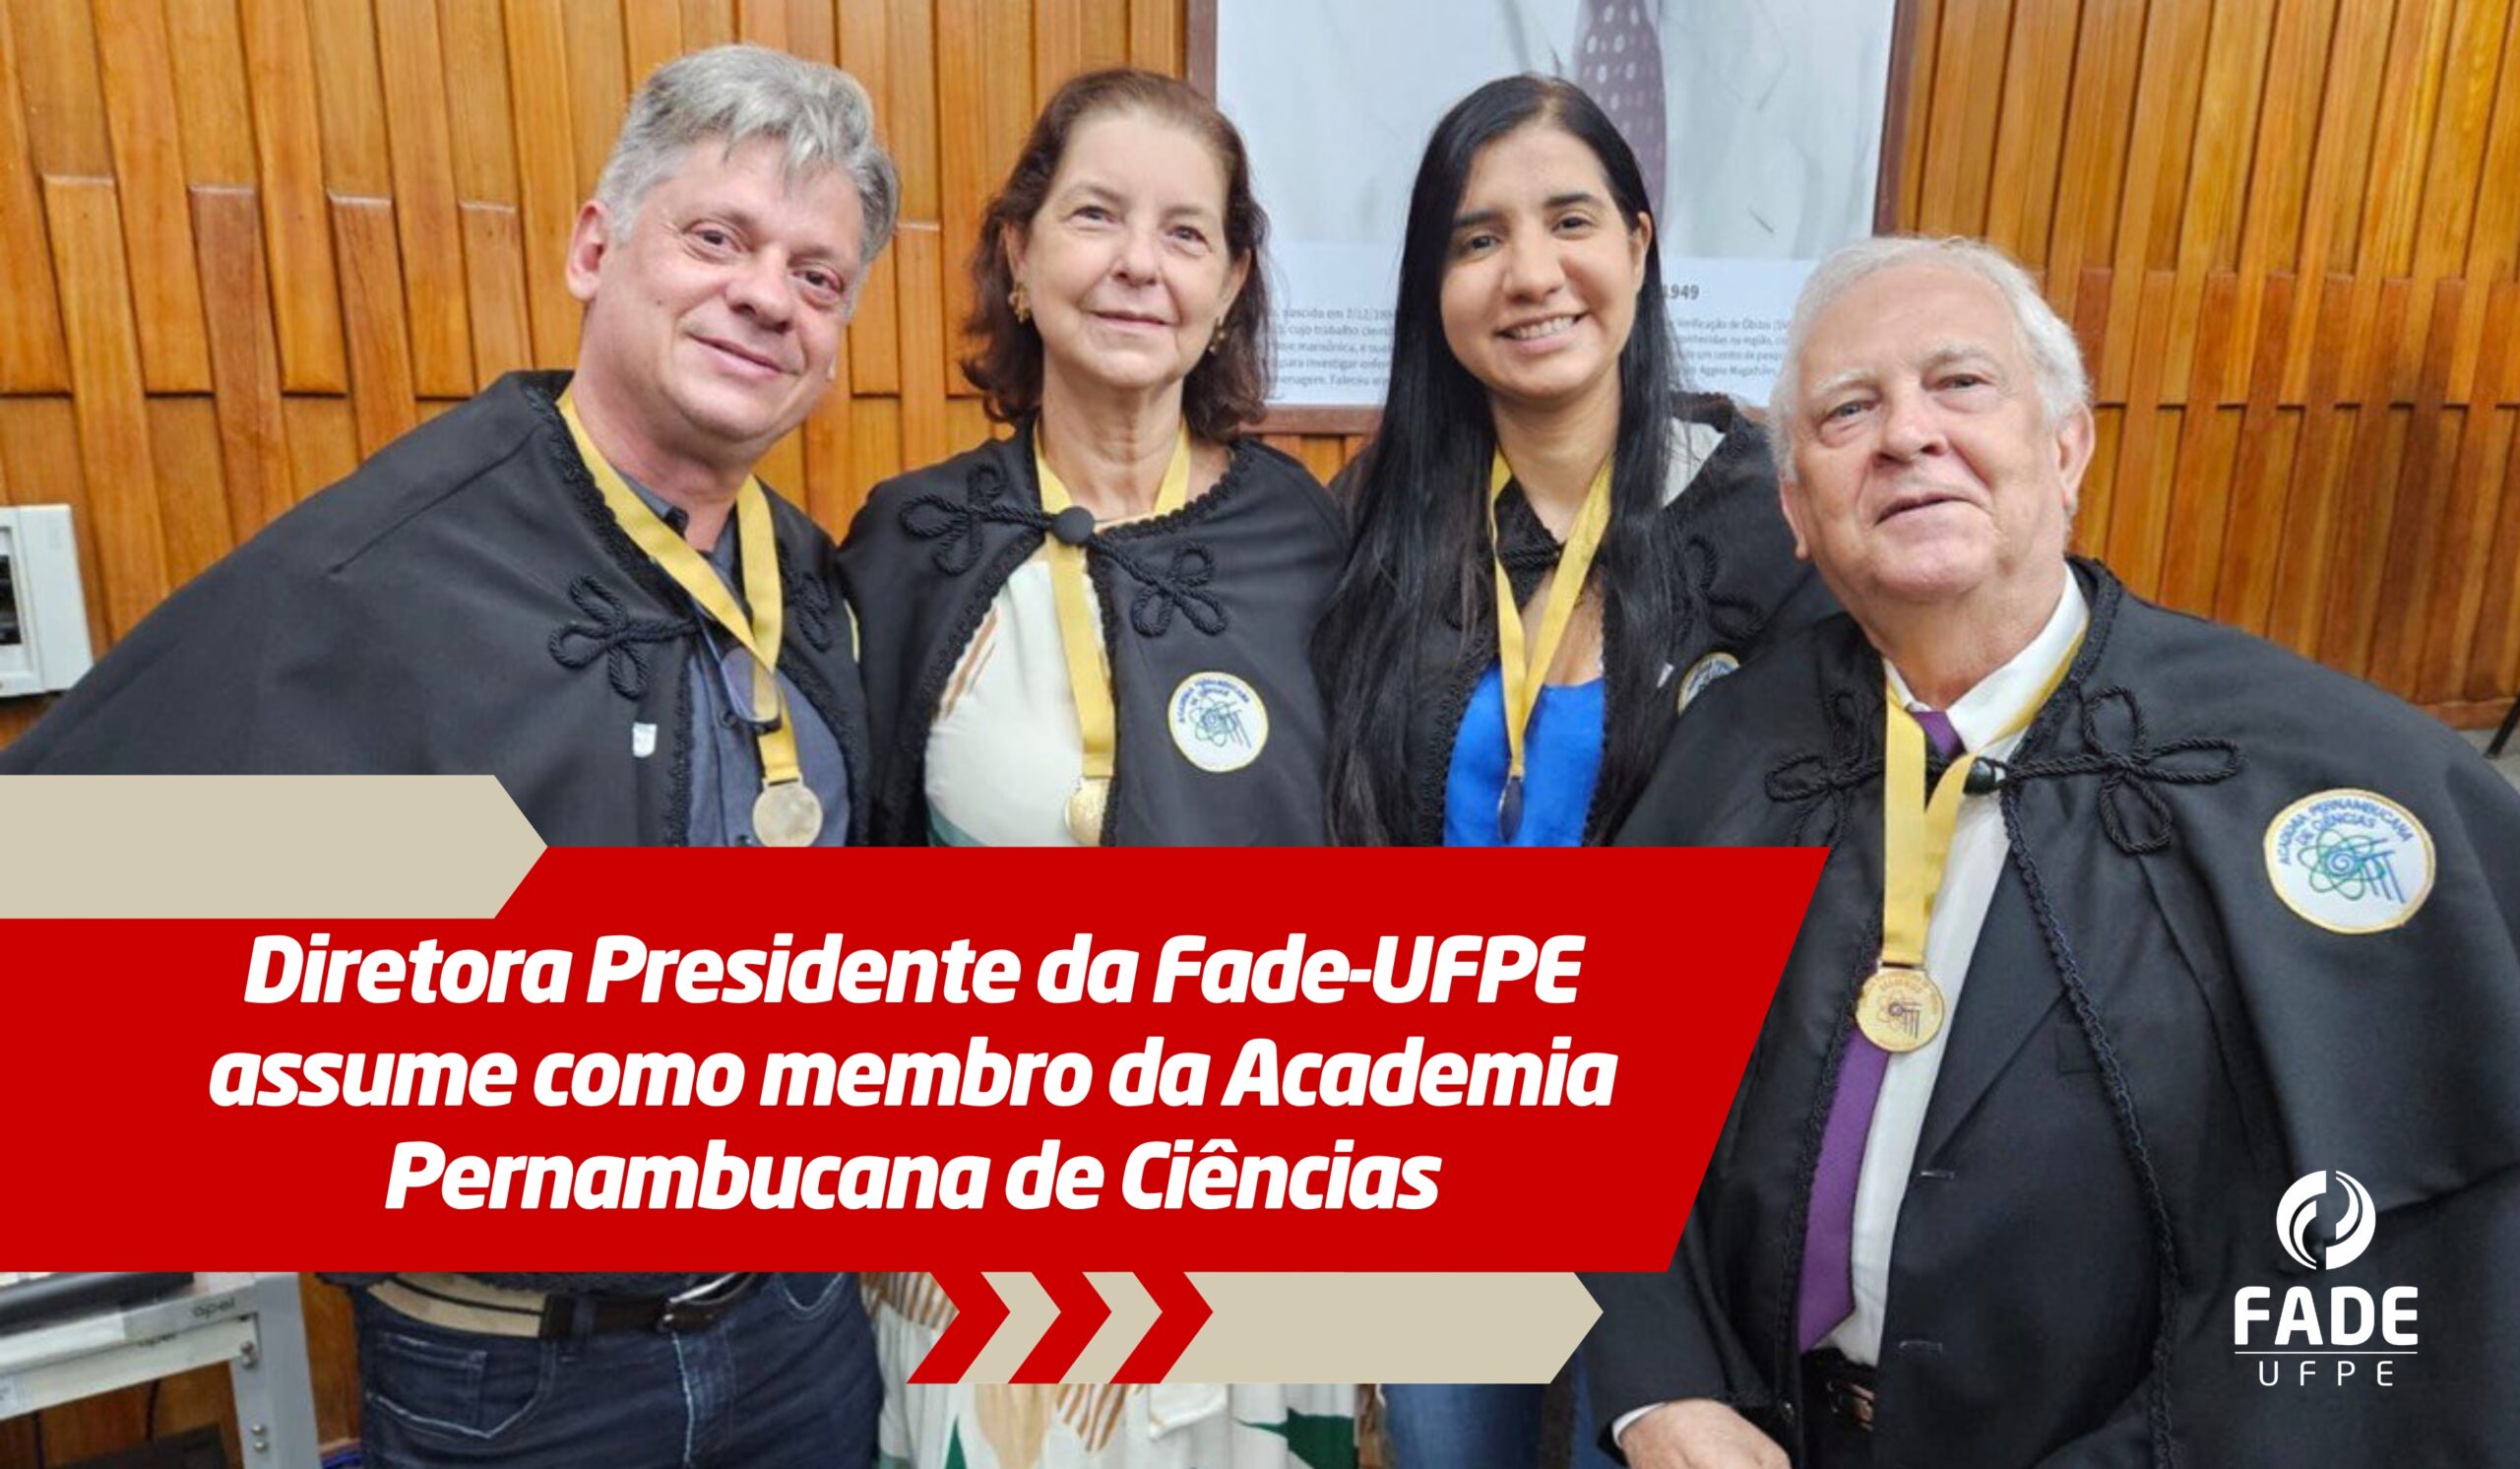 Diretora Presidente da Fade-UFPE assume como membro da Academia Pernambucana de Ciências